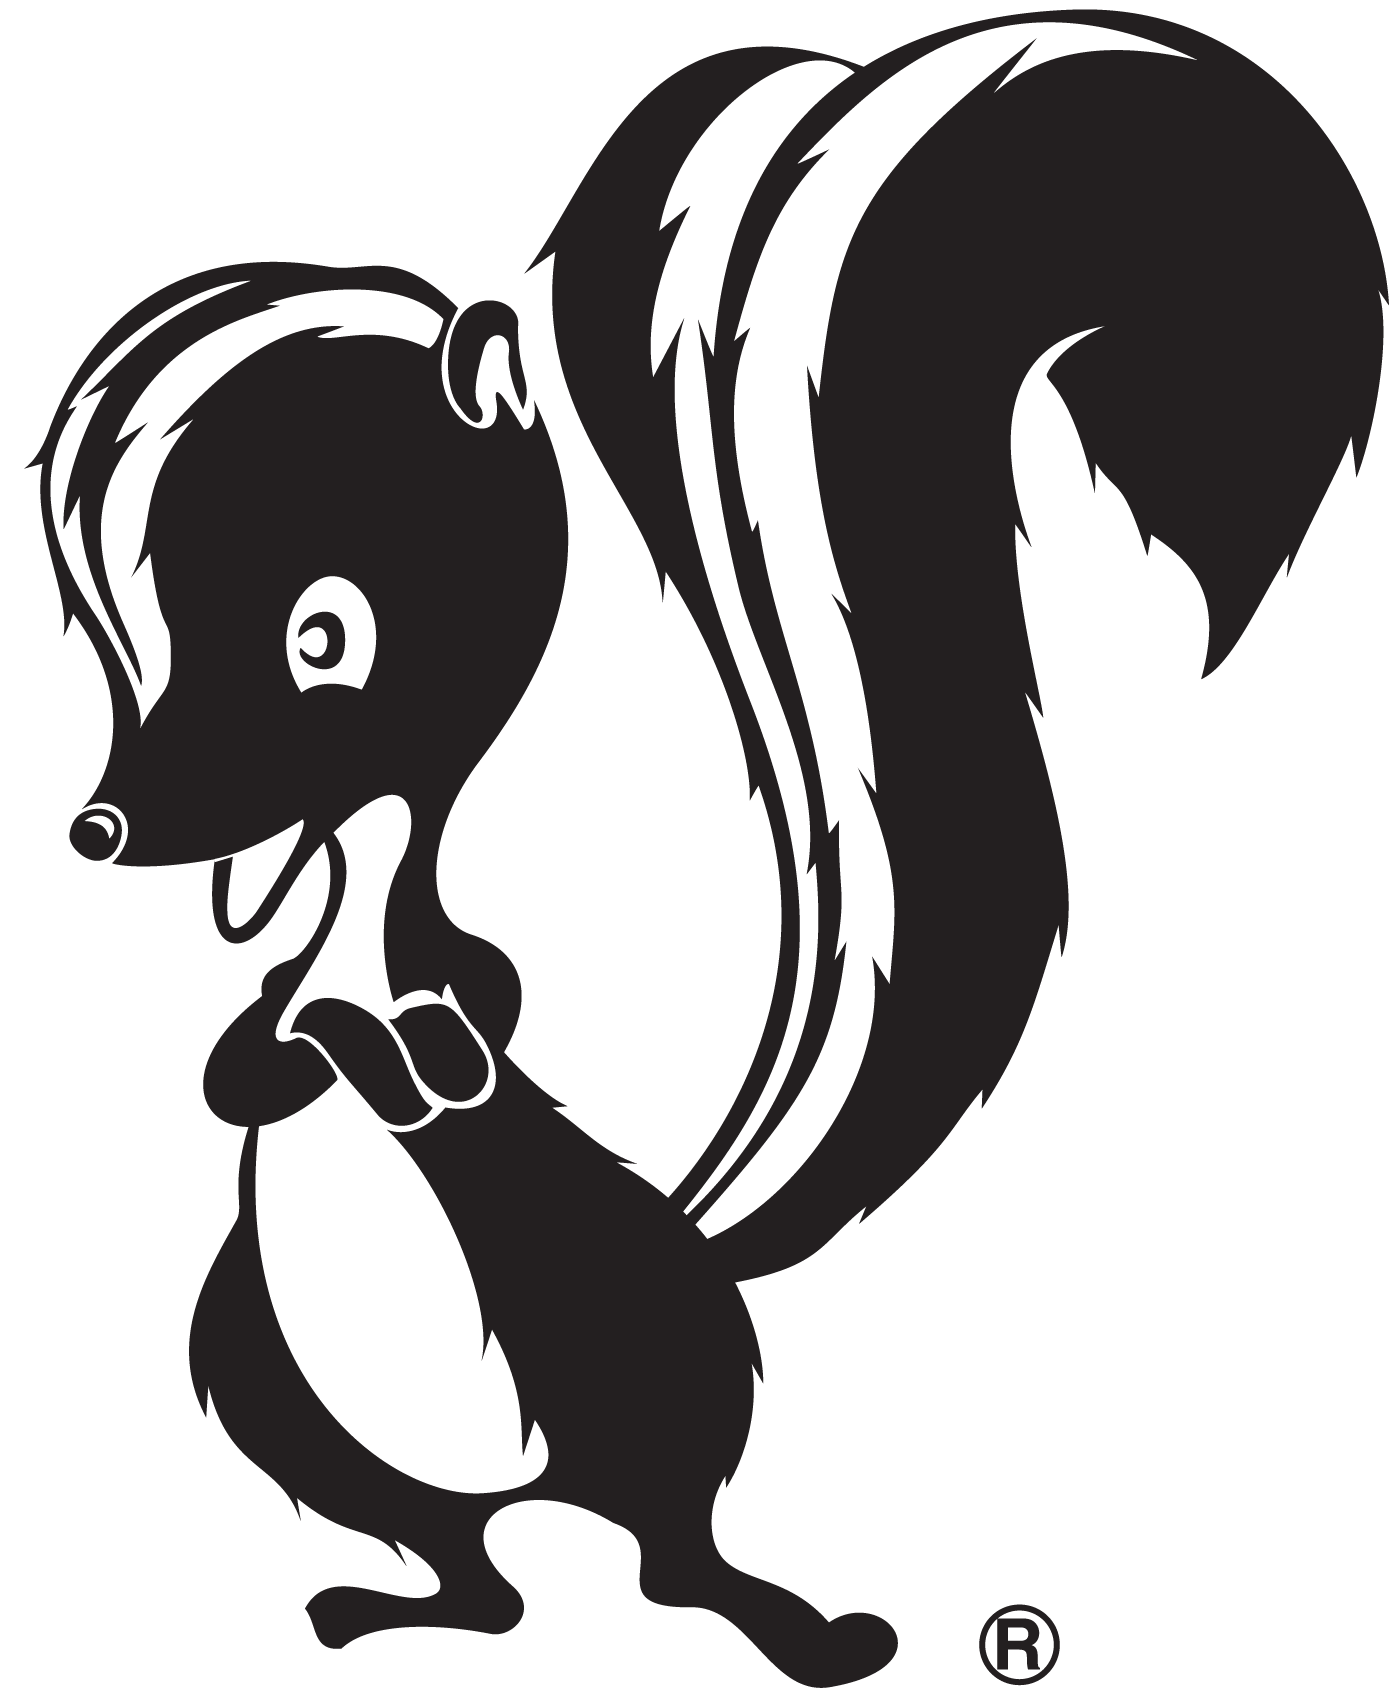 Skunk Works® logo